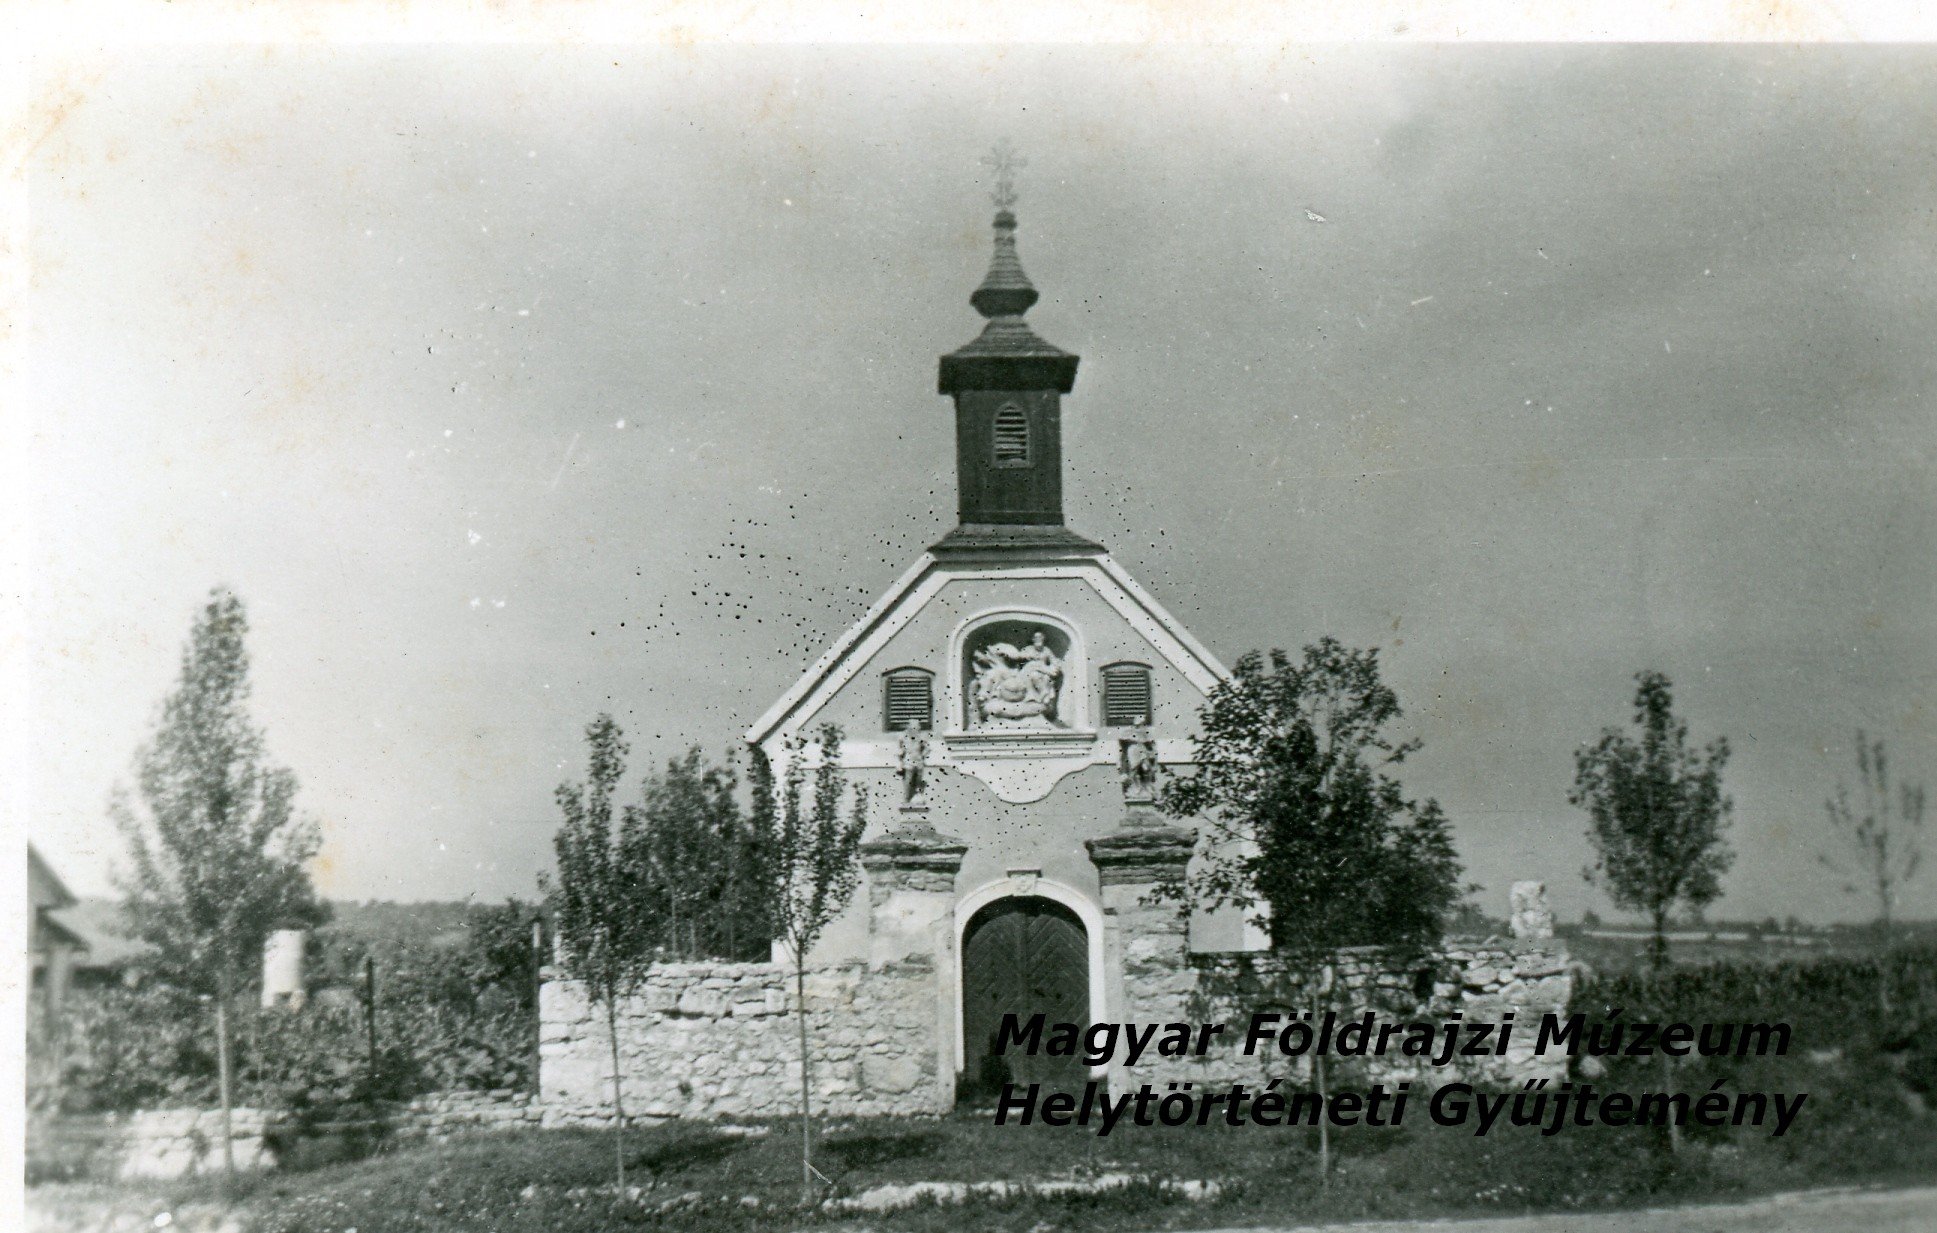 Szent Sebestyén kápolna az 1950-es években. (Magyar Földrajzi Múzeum CC BY-NC-SA)